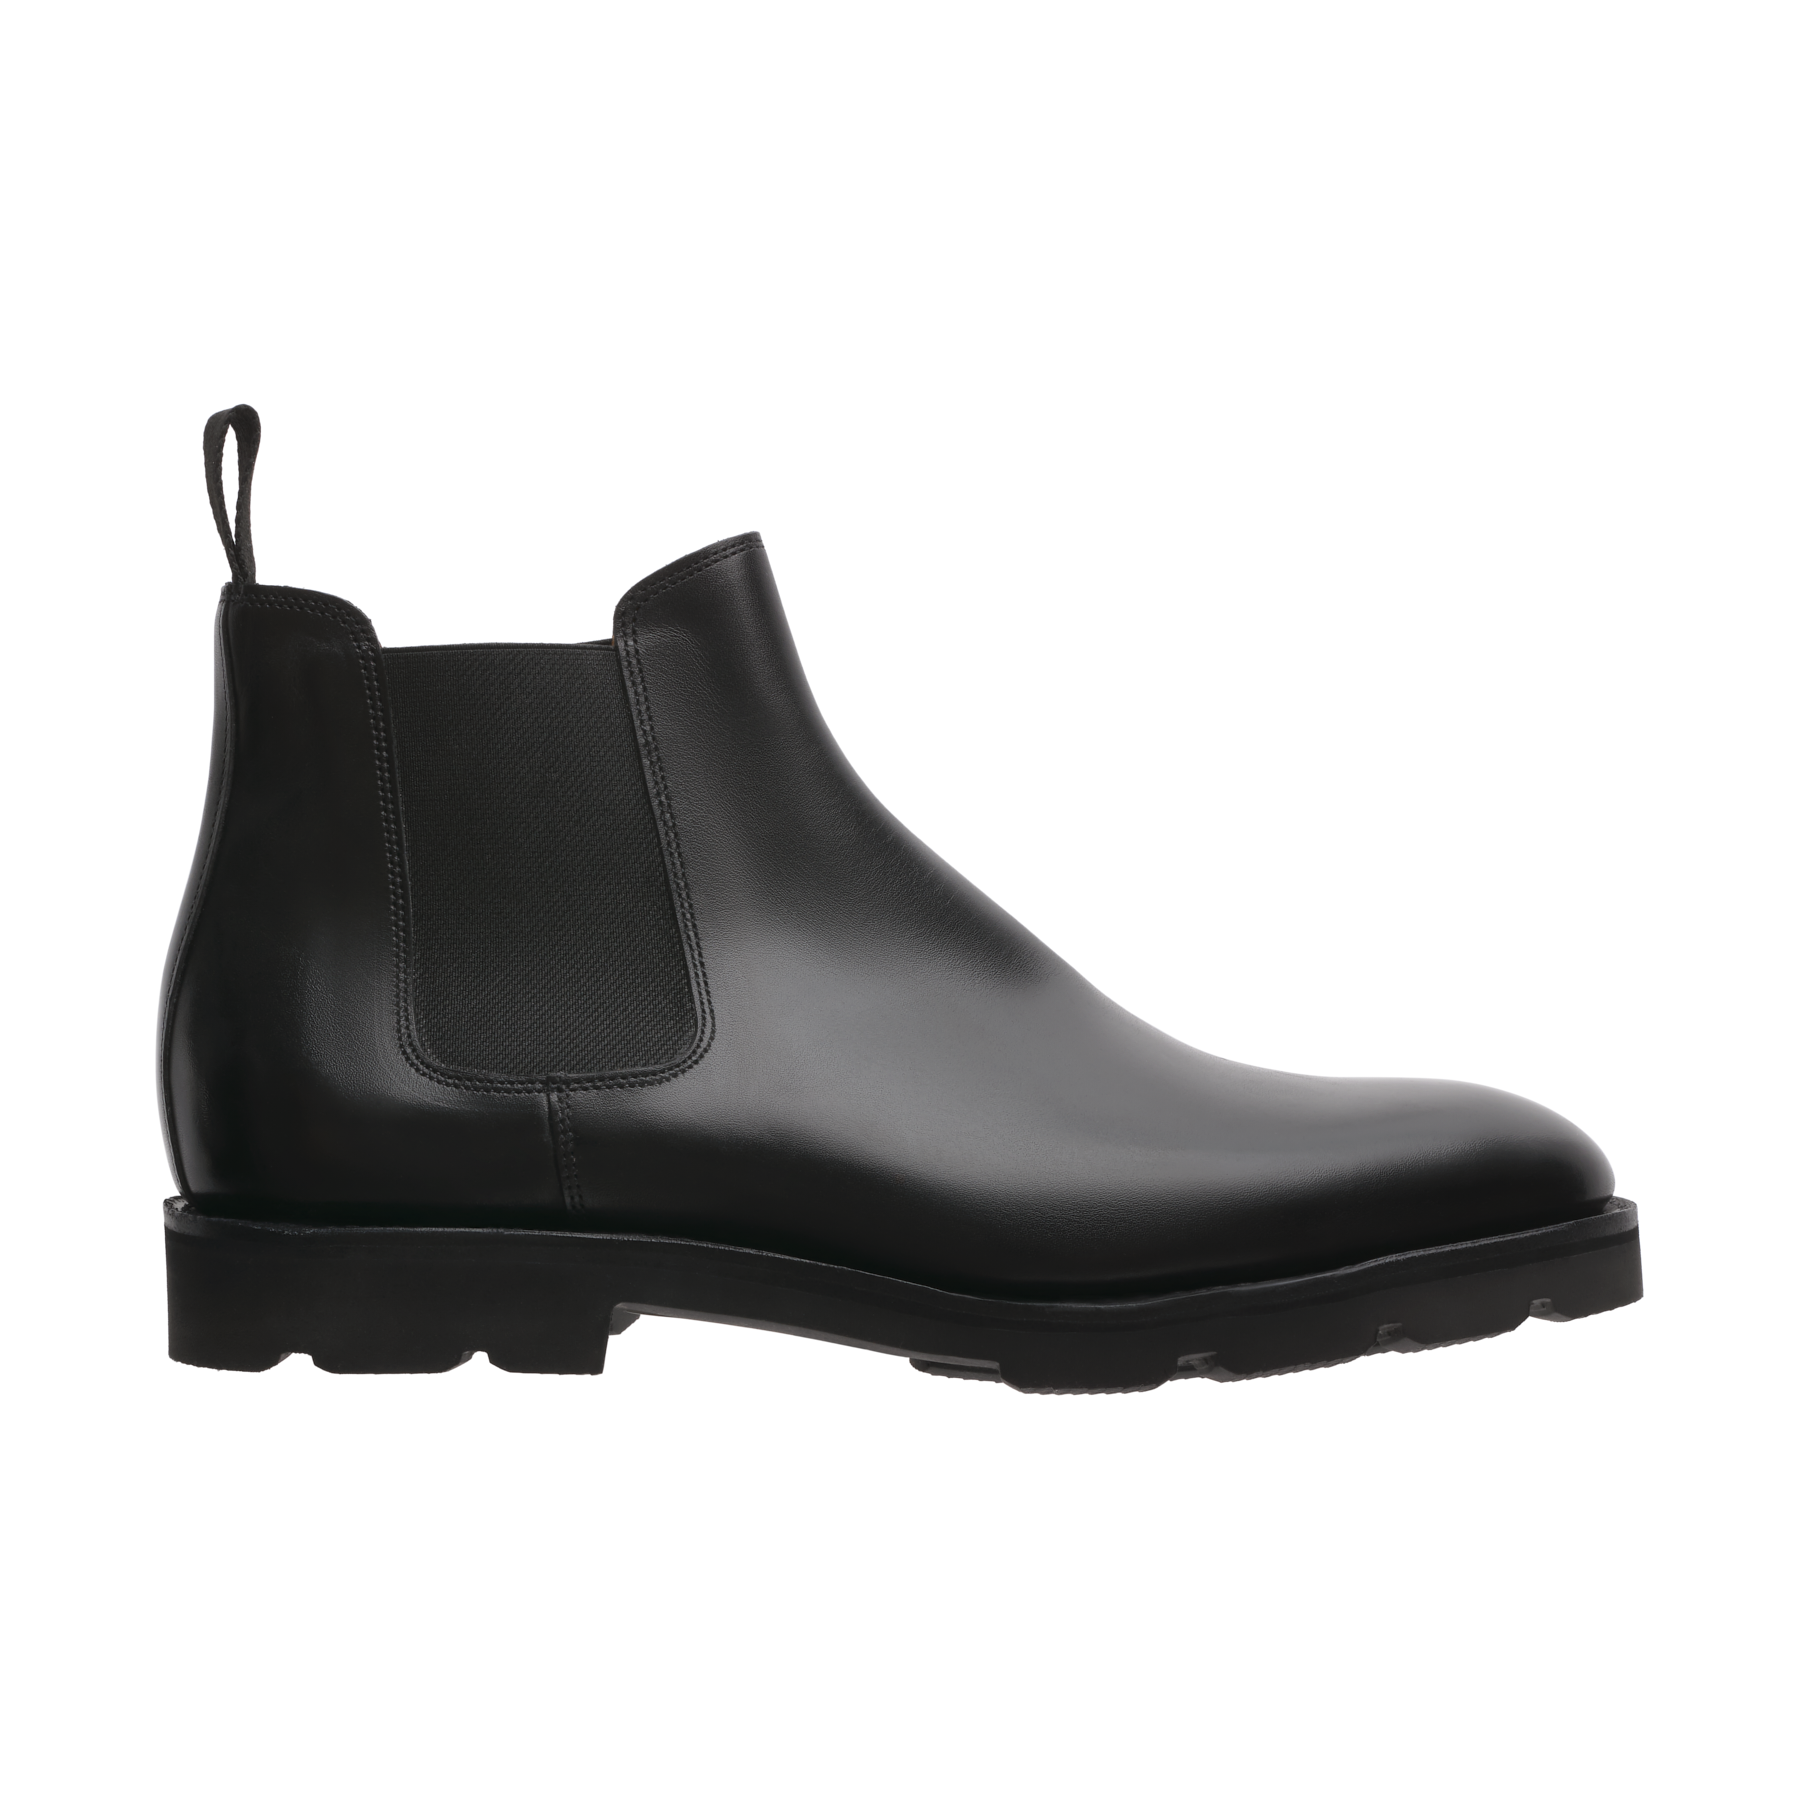 John Lobb Lawry Chelsea Boots with Lightweight Walking Sole in Black |  SARTALE